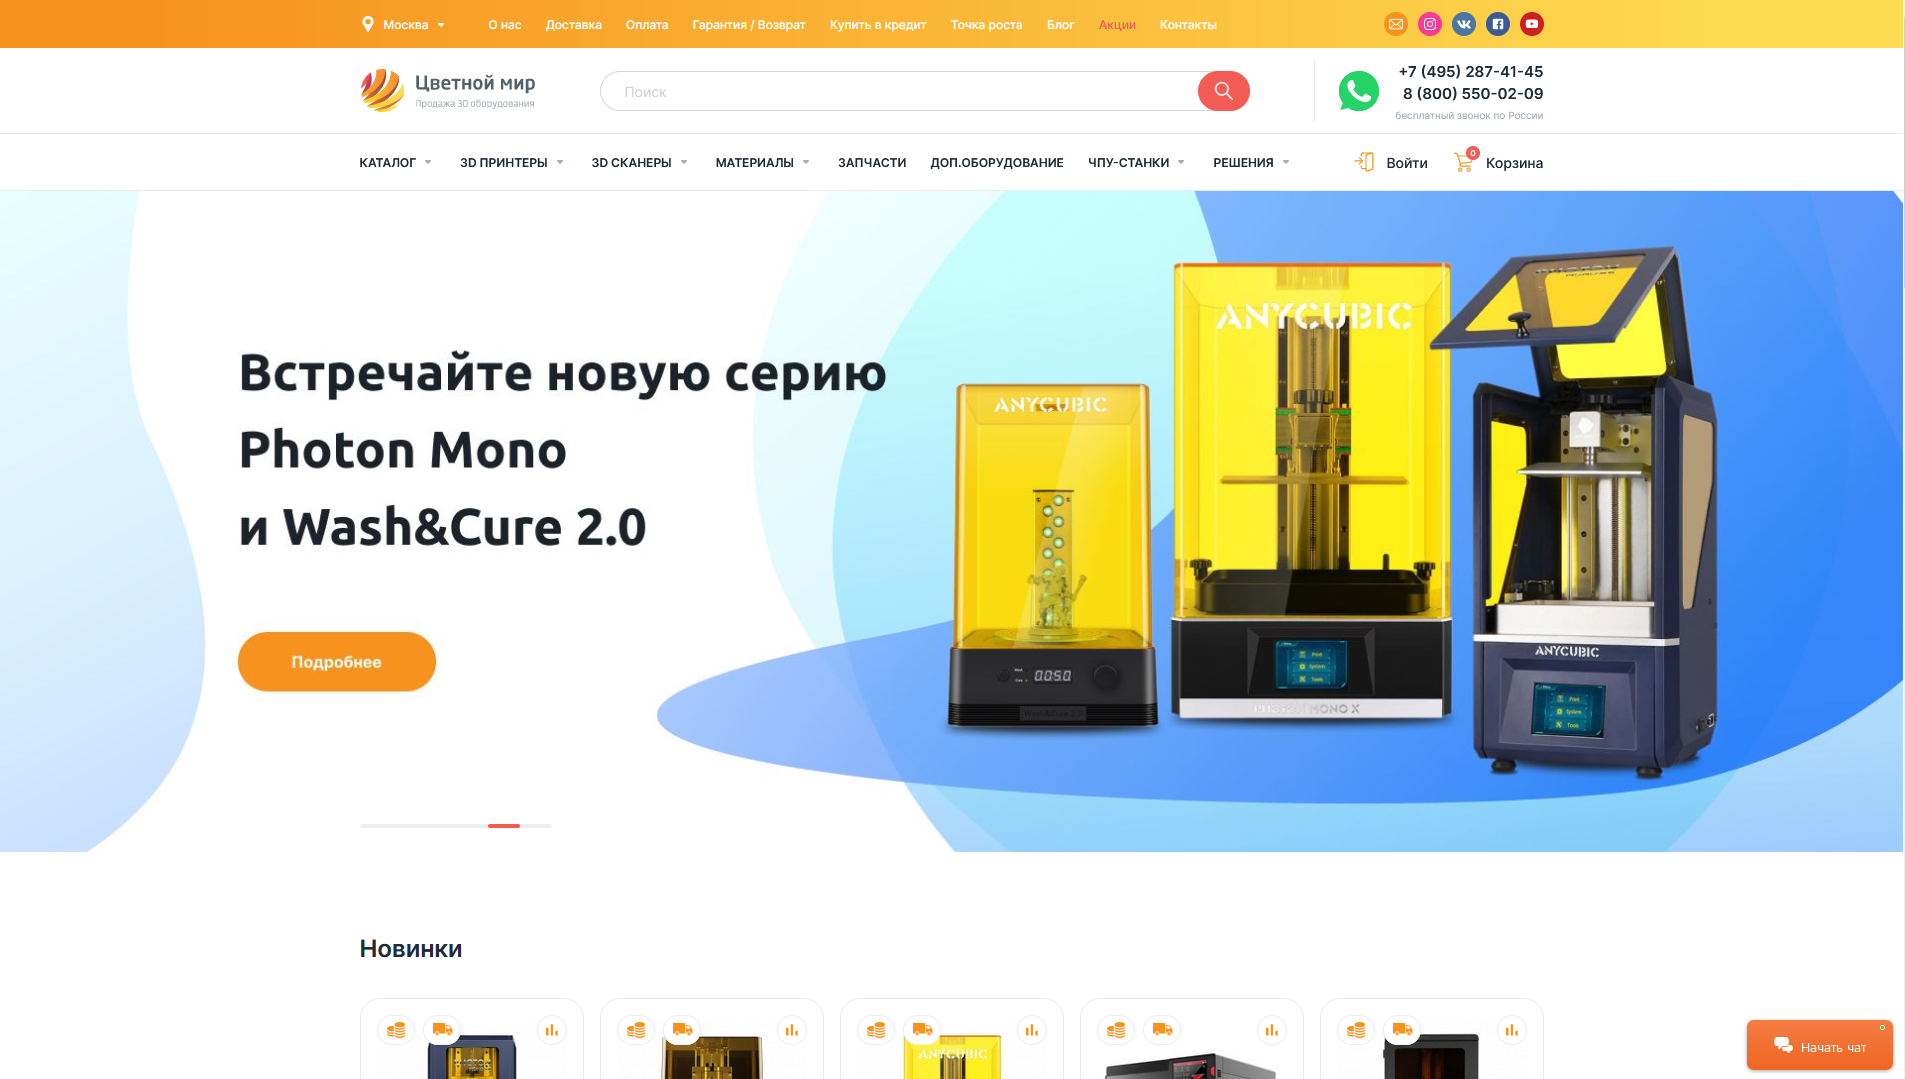 Настольные 3D-сканеры - купить стационарный 3D-сканер по низкой цене в интернет-магазине «Цветной Мир» в Москве